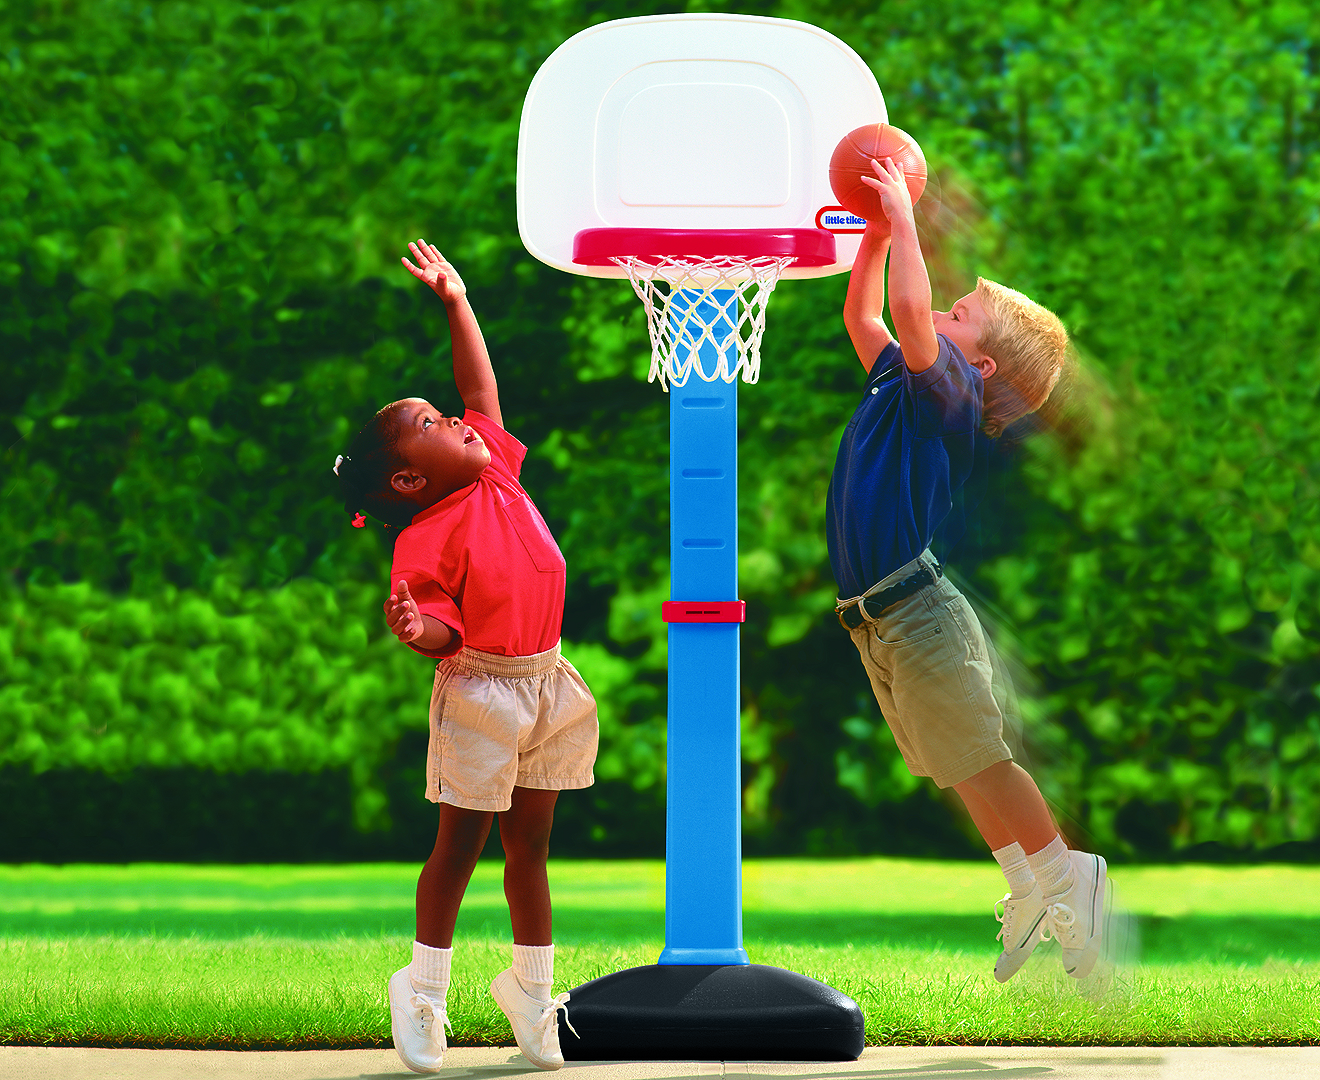 Кидает детский. Little Tikes баскетбольное кольцо. Дети играющие в баскетбол. Баскетбольное кольцо в детский сад. Баскетбольный мяч и кольцо.